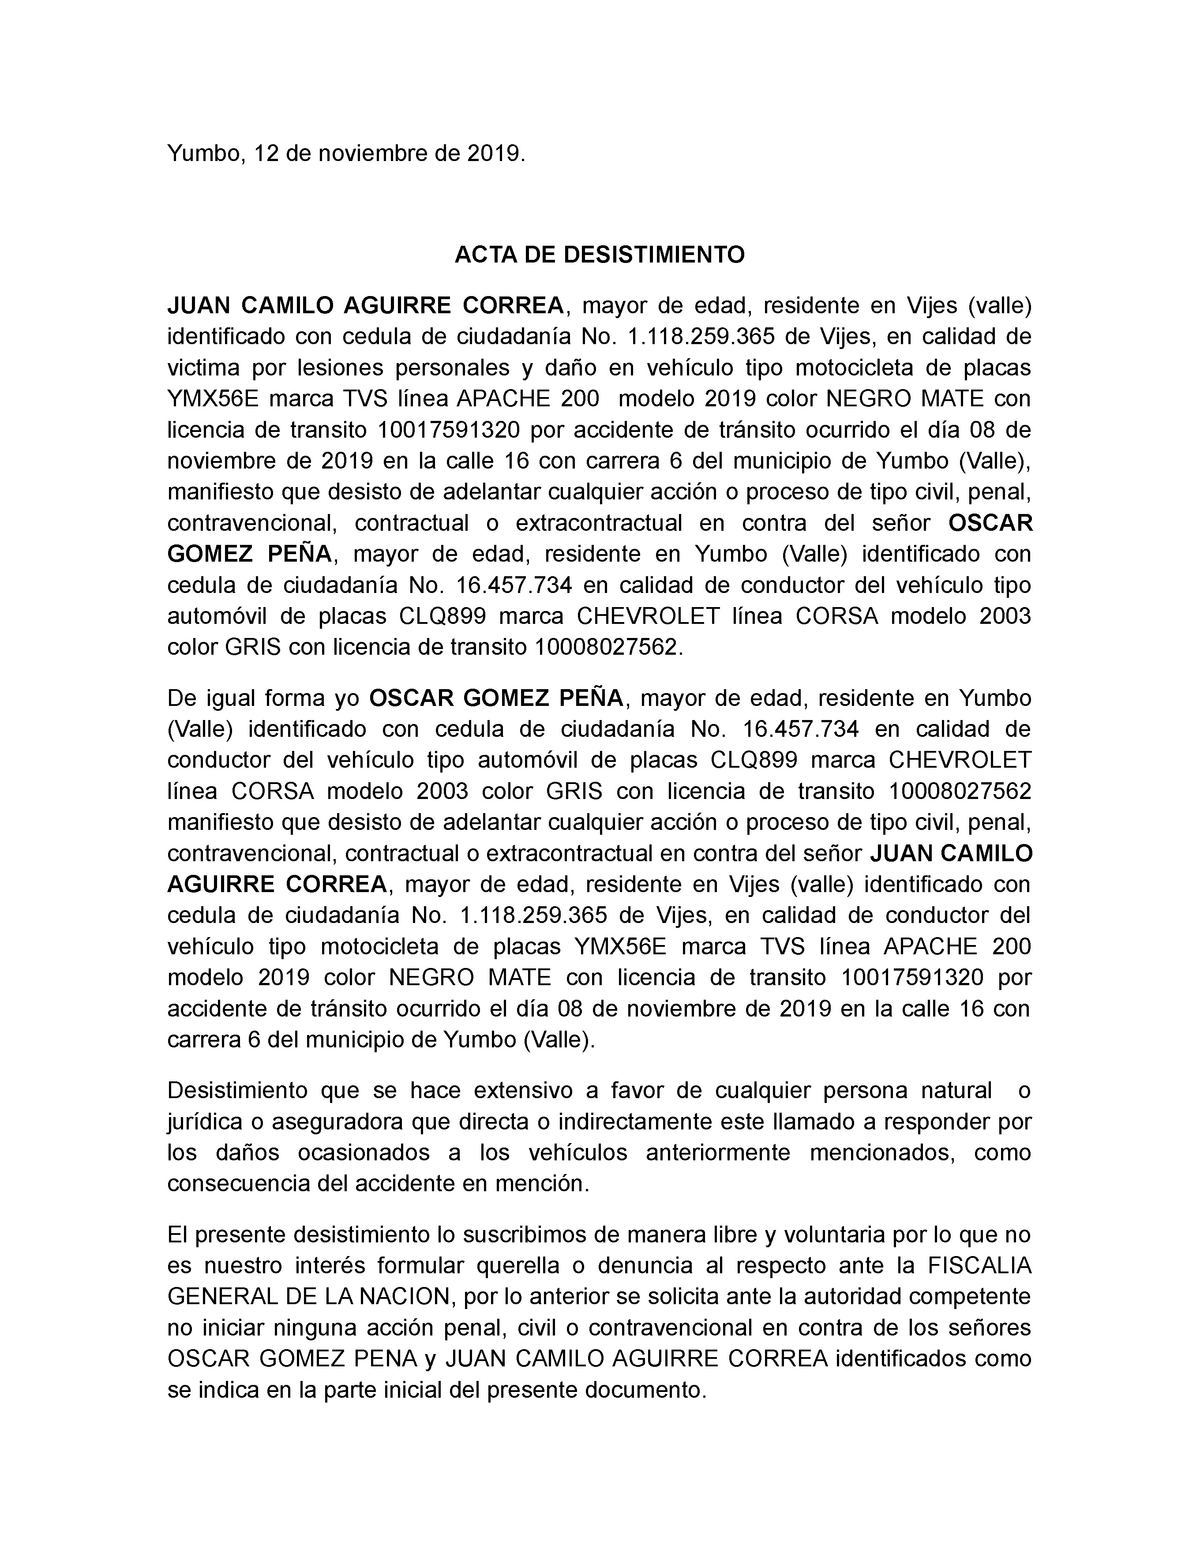 Desistimiento - Yumbo, 12 de noviembre de 2019. ACTA DE DESISTIMIENTO JUAN  CAMILO AGUIRRE CORREA, - Studocu